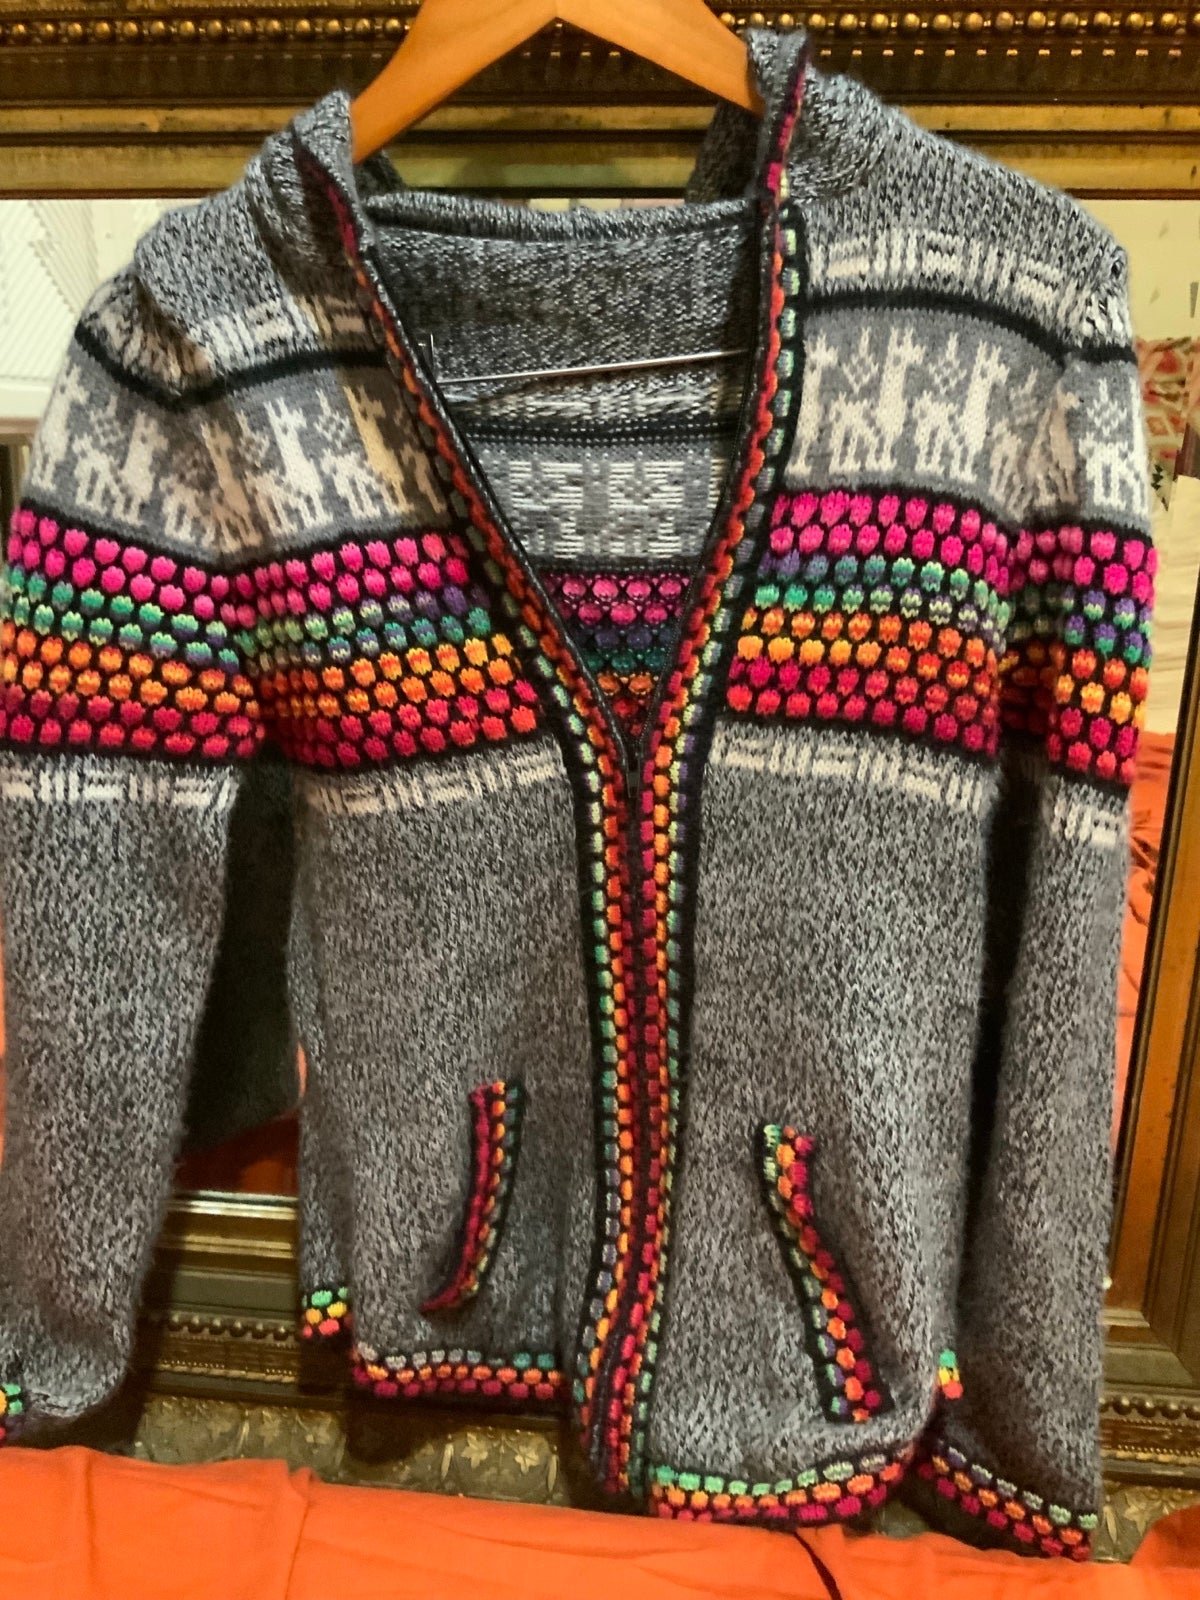 Custom Handmade Alpaca Hooded Zippup Sweater Jacket w/ Pockets size Small MYzXW19Mw New Style